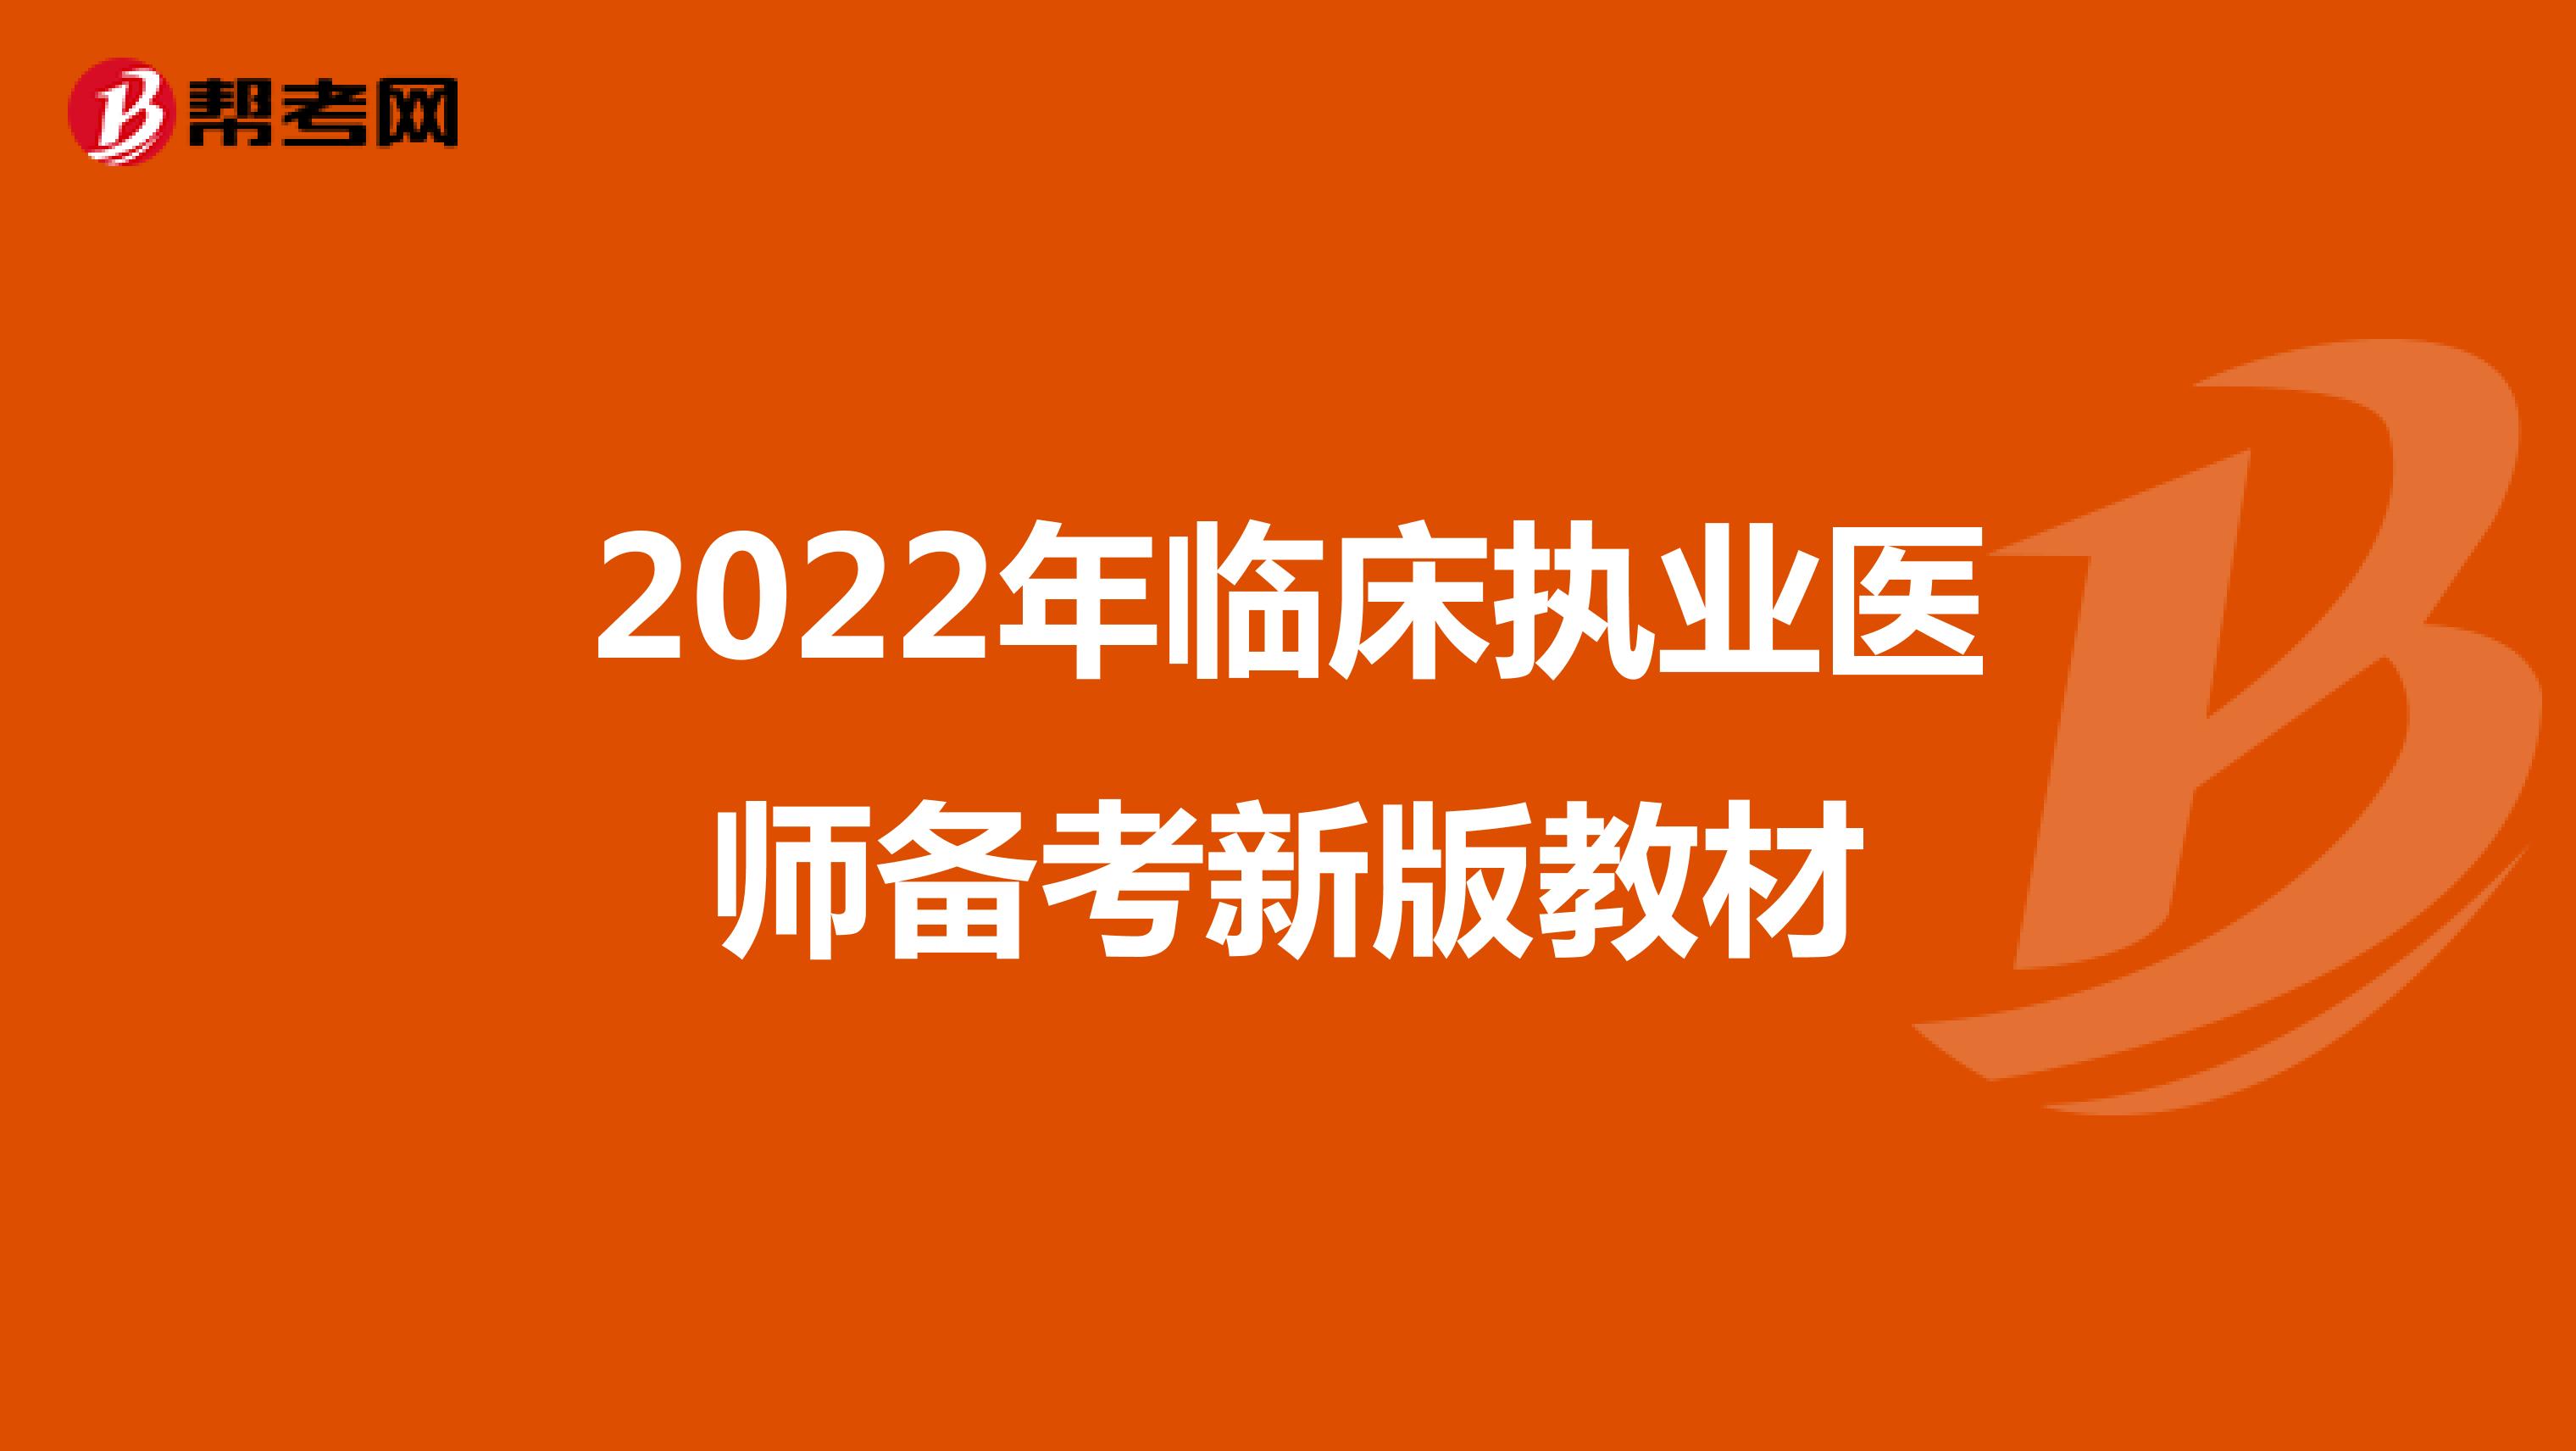 2022年临床执业医师备考新版教材